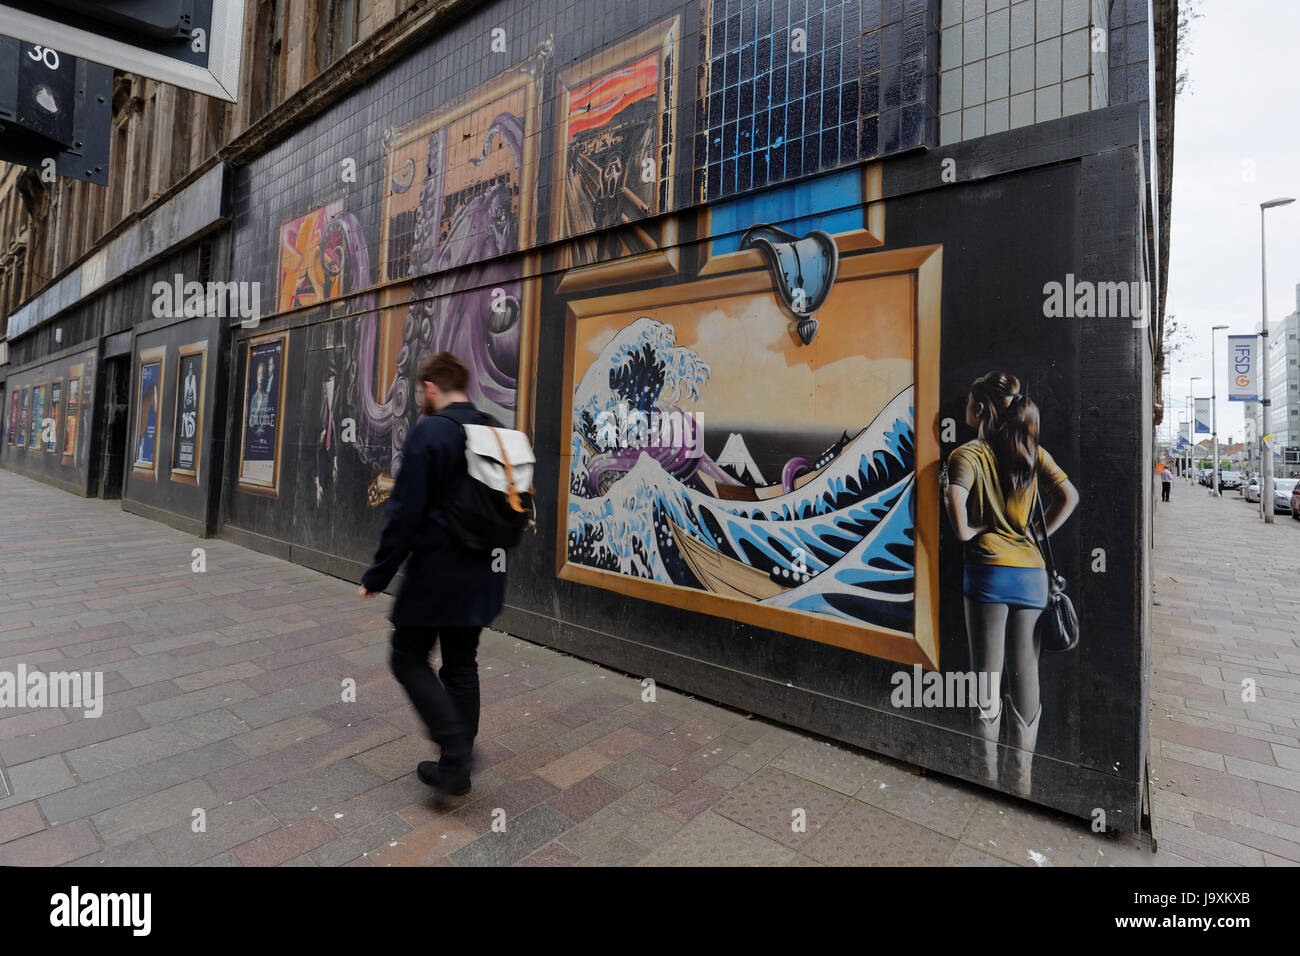 Glasgow-Kunst im öffentlichen Raum-Graffiti auf der Argyle Street mit den Auftrag anzeigen Om Website zu bauen um für neues Hotel abgerissen werden Stockfoto